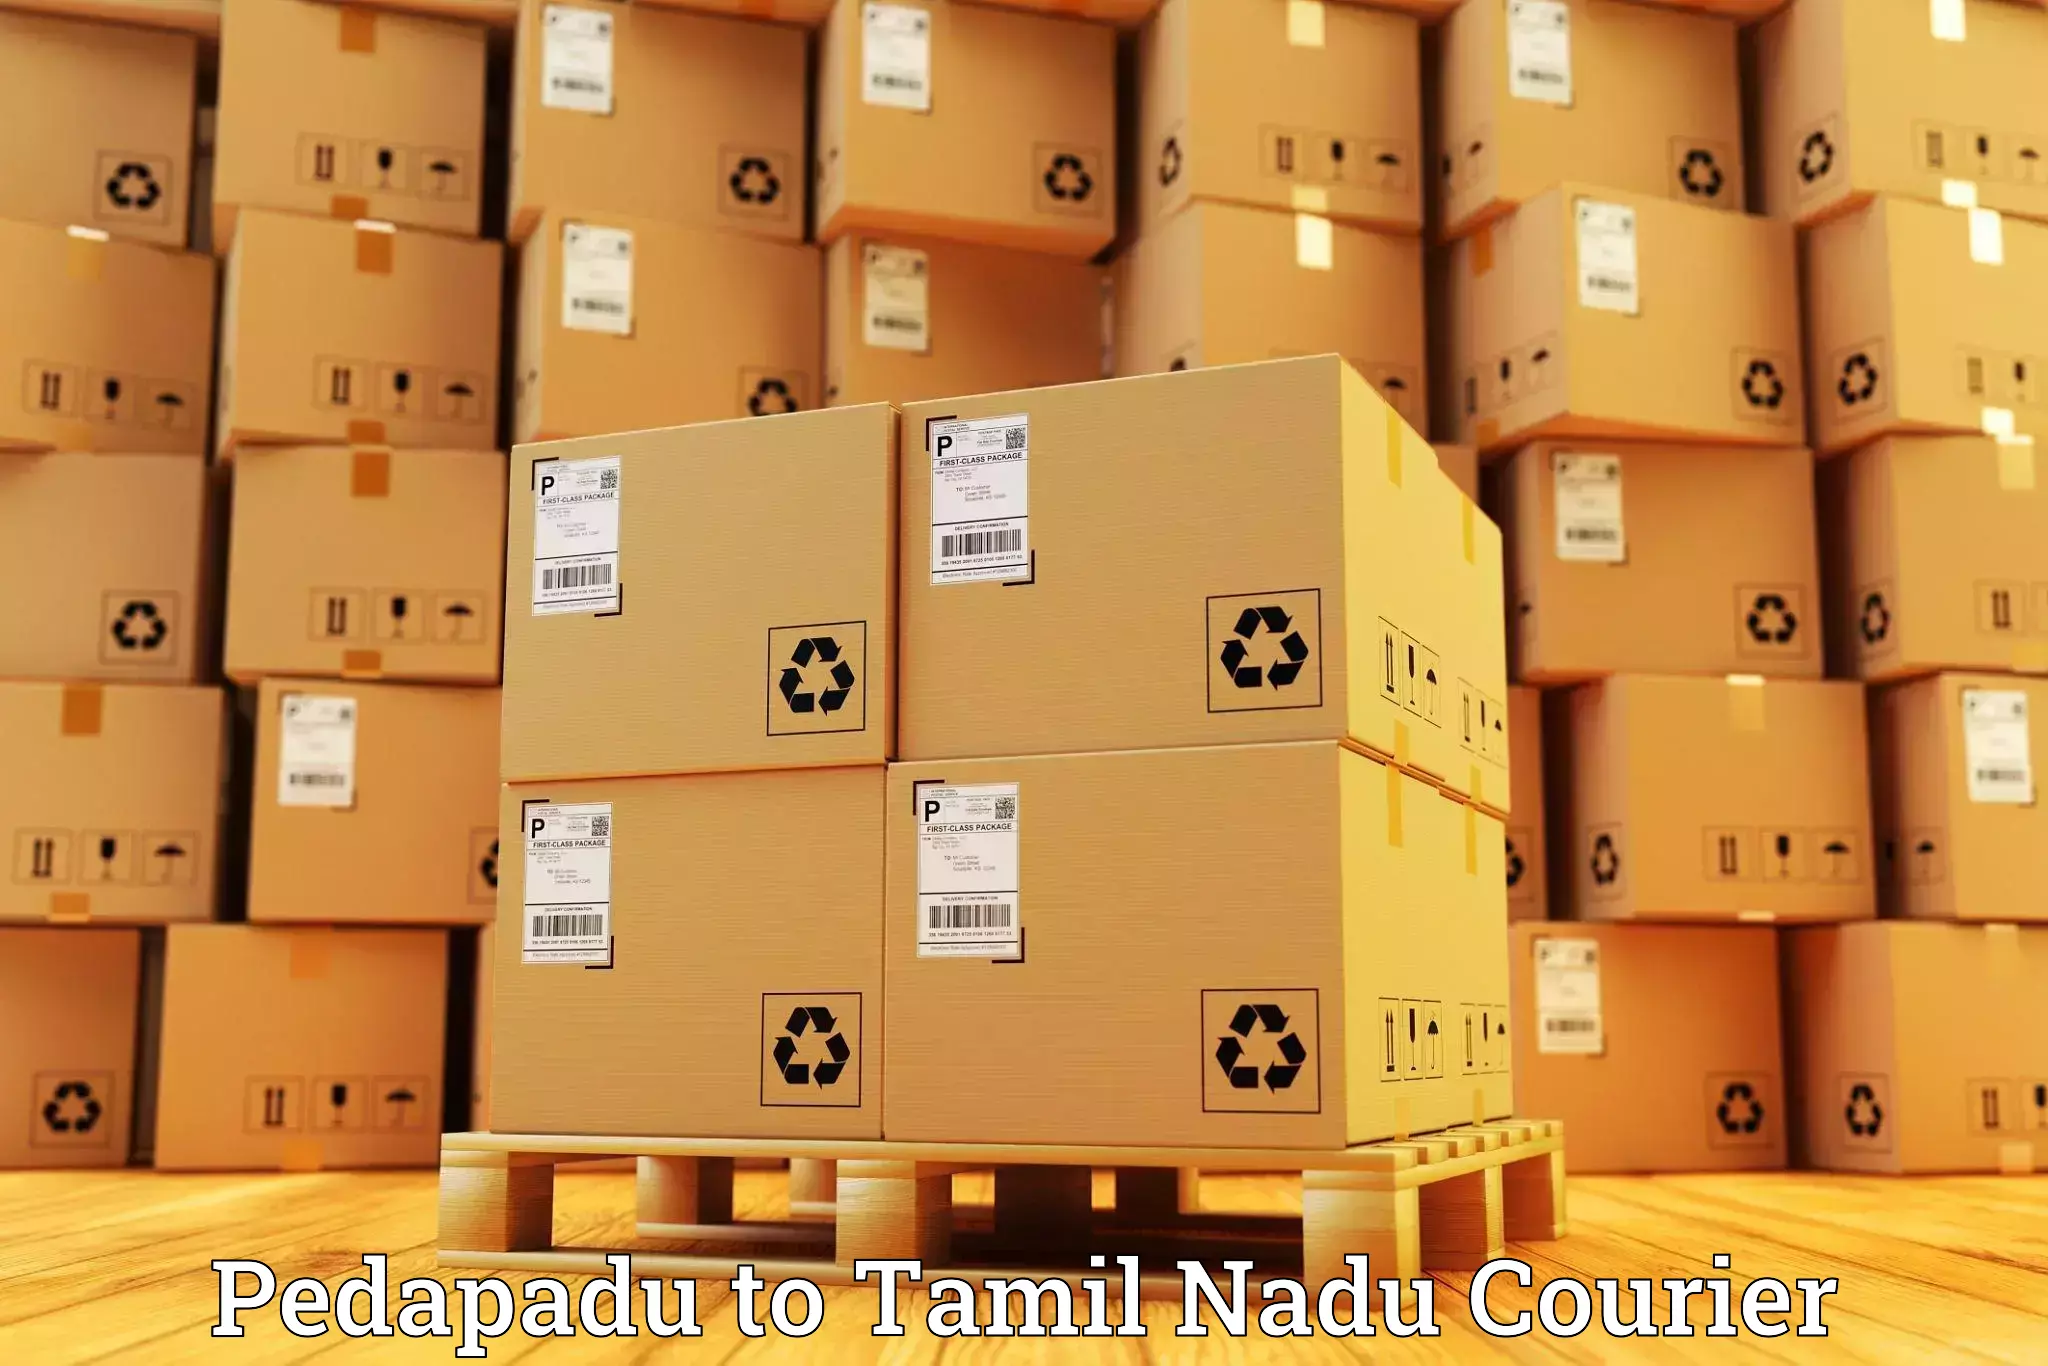 Efficient shipping operations Pedapadu to Kumbakonam